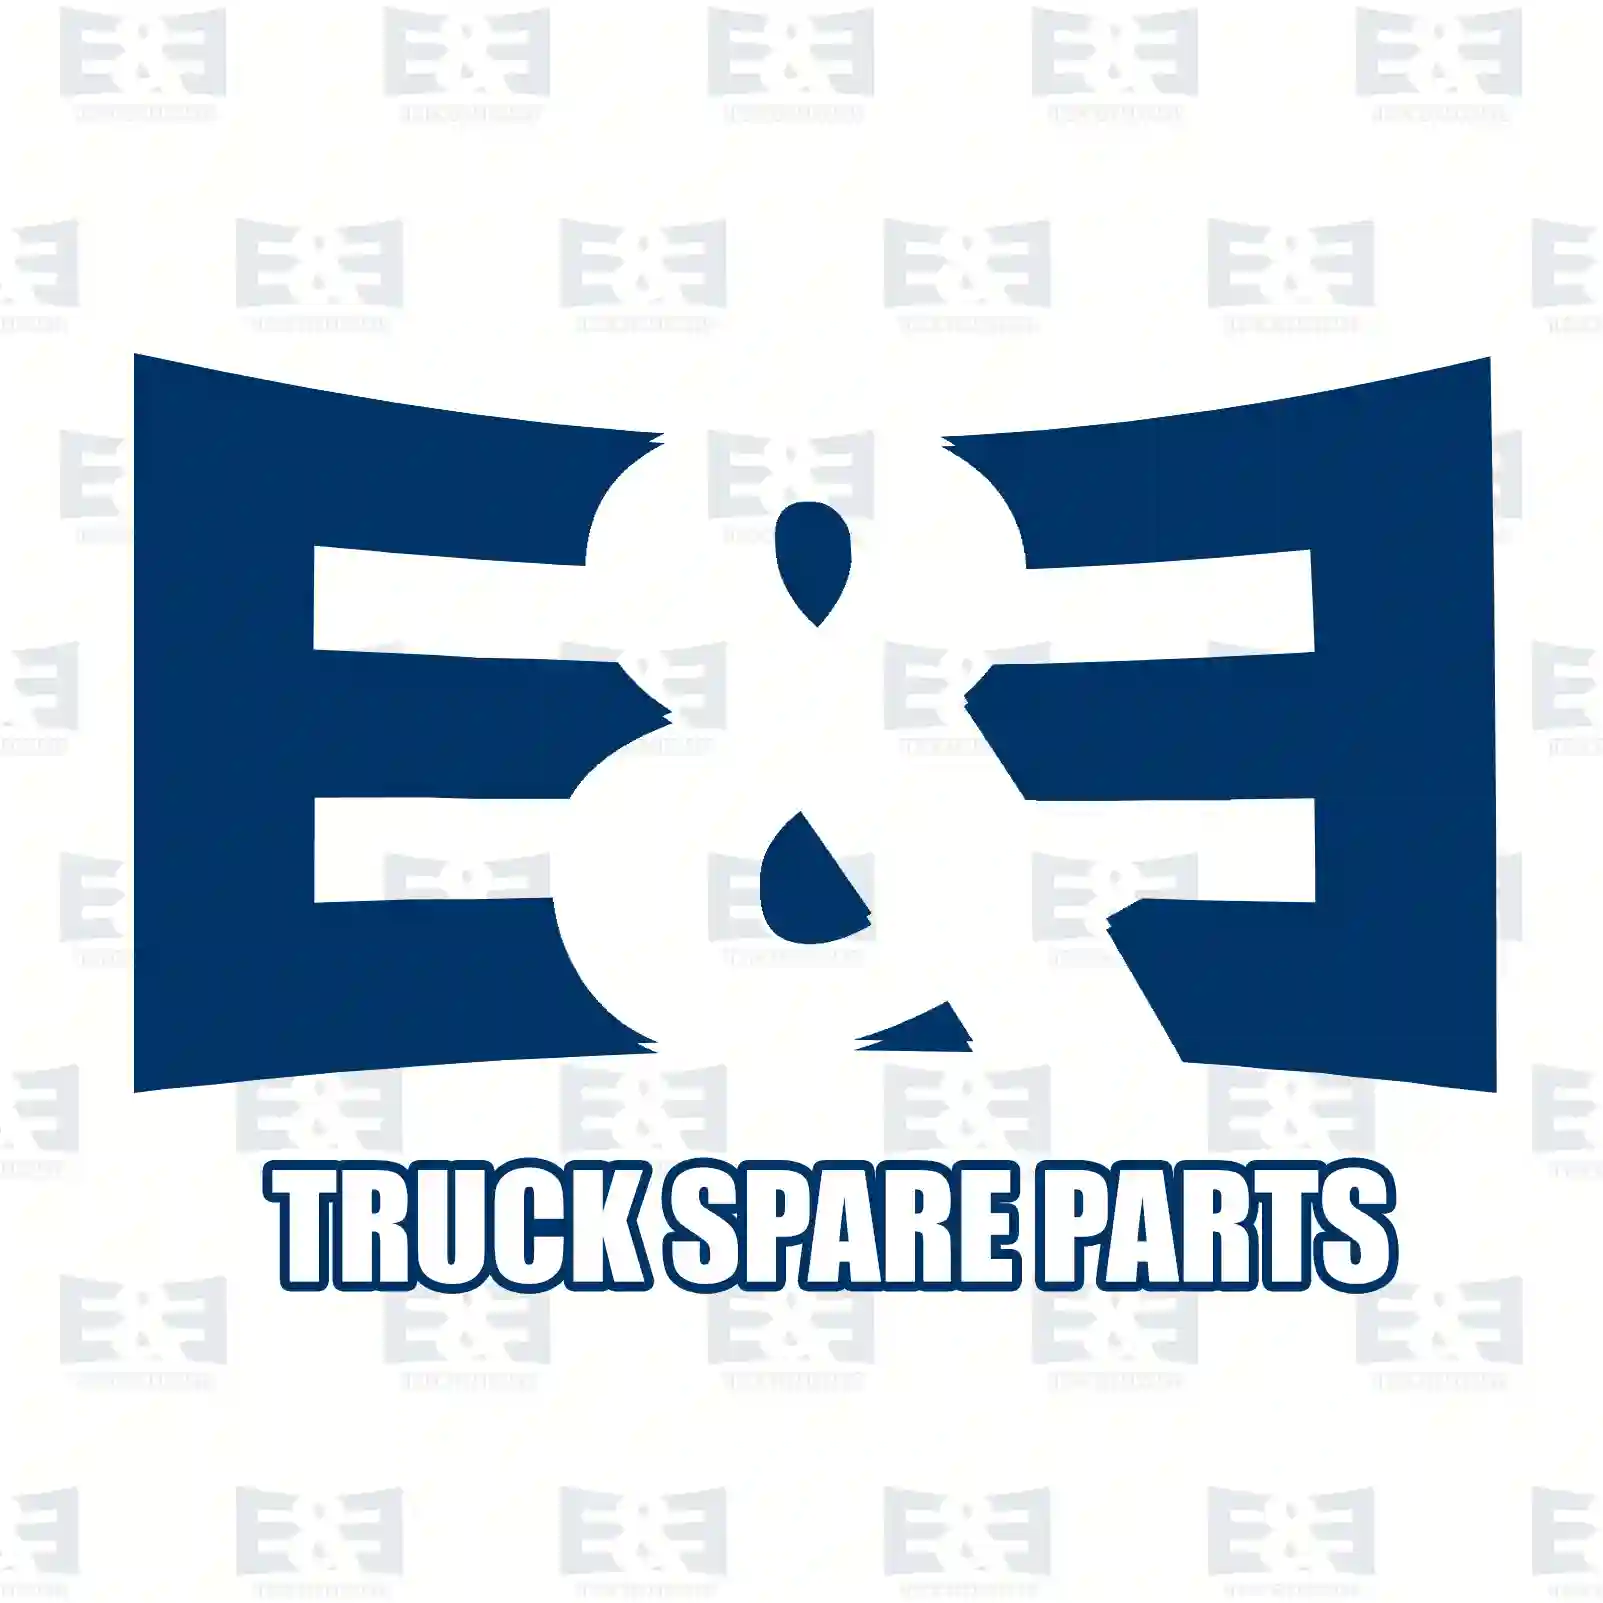 Level valve, 2E2274084, 1541189 ||  2E2274084 E&E Truck Spare Parts | Truck Spare Parts, Auotomotive Spare Parts Level valve, 2E2274084, 1541189 ||  2E2274084 E&E Truck Spare Parts | Truck Spare Parts, Auotomotive Spare Parts